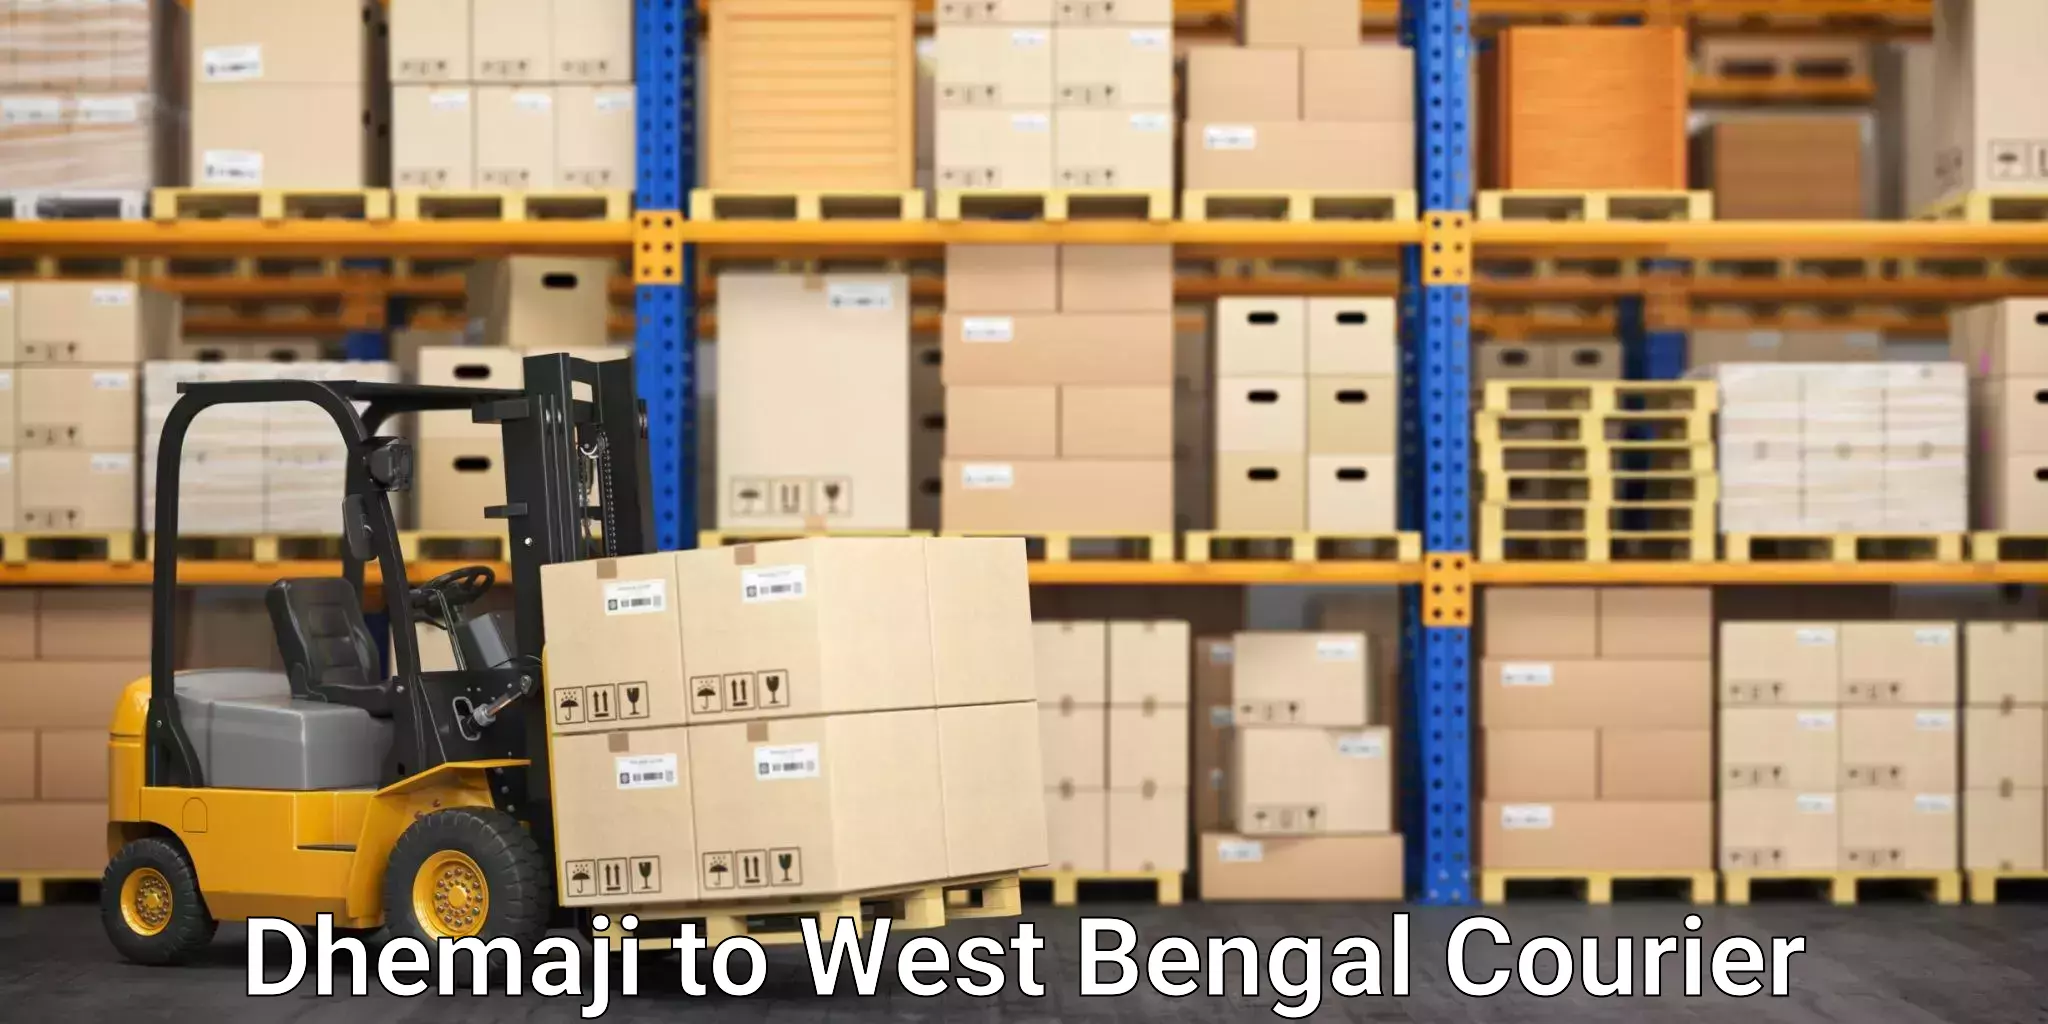 Courier service efficiency in Dhemaji to Kolkata Port